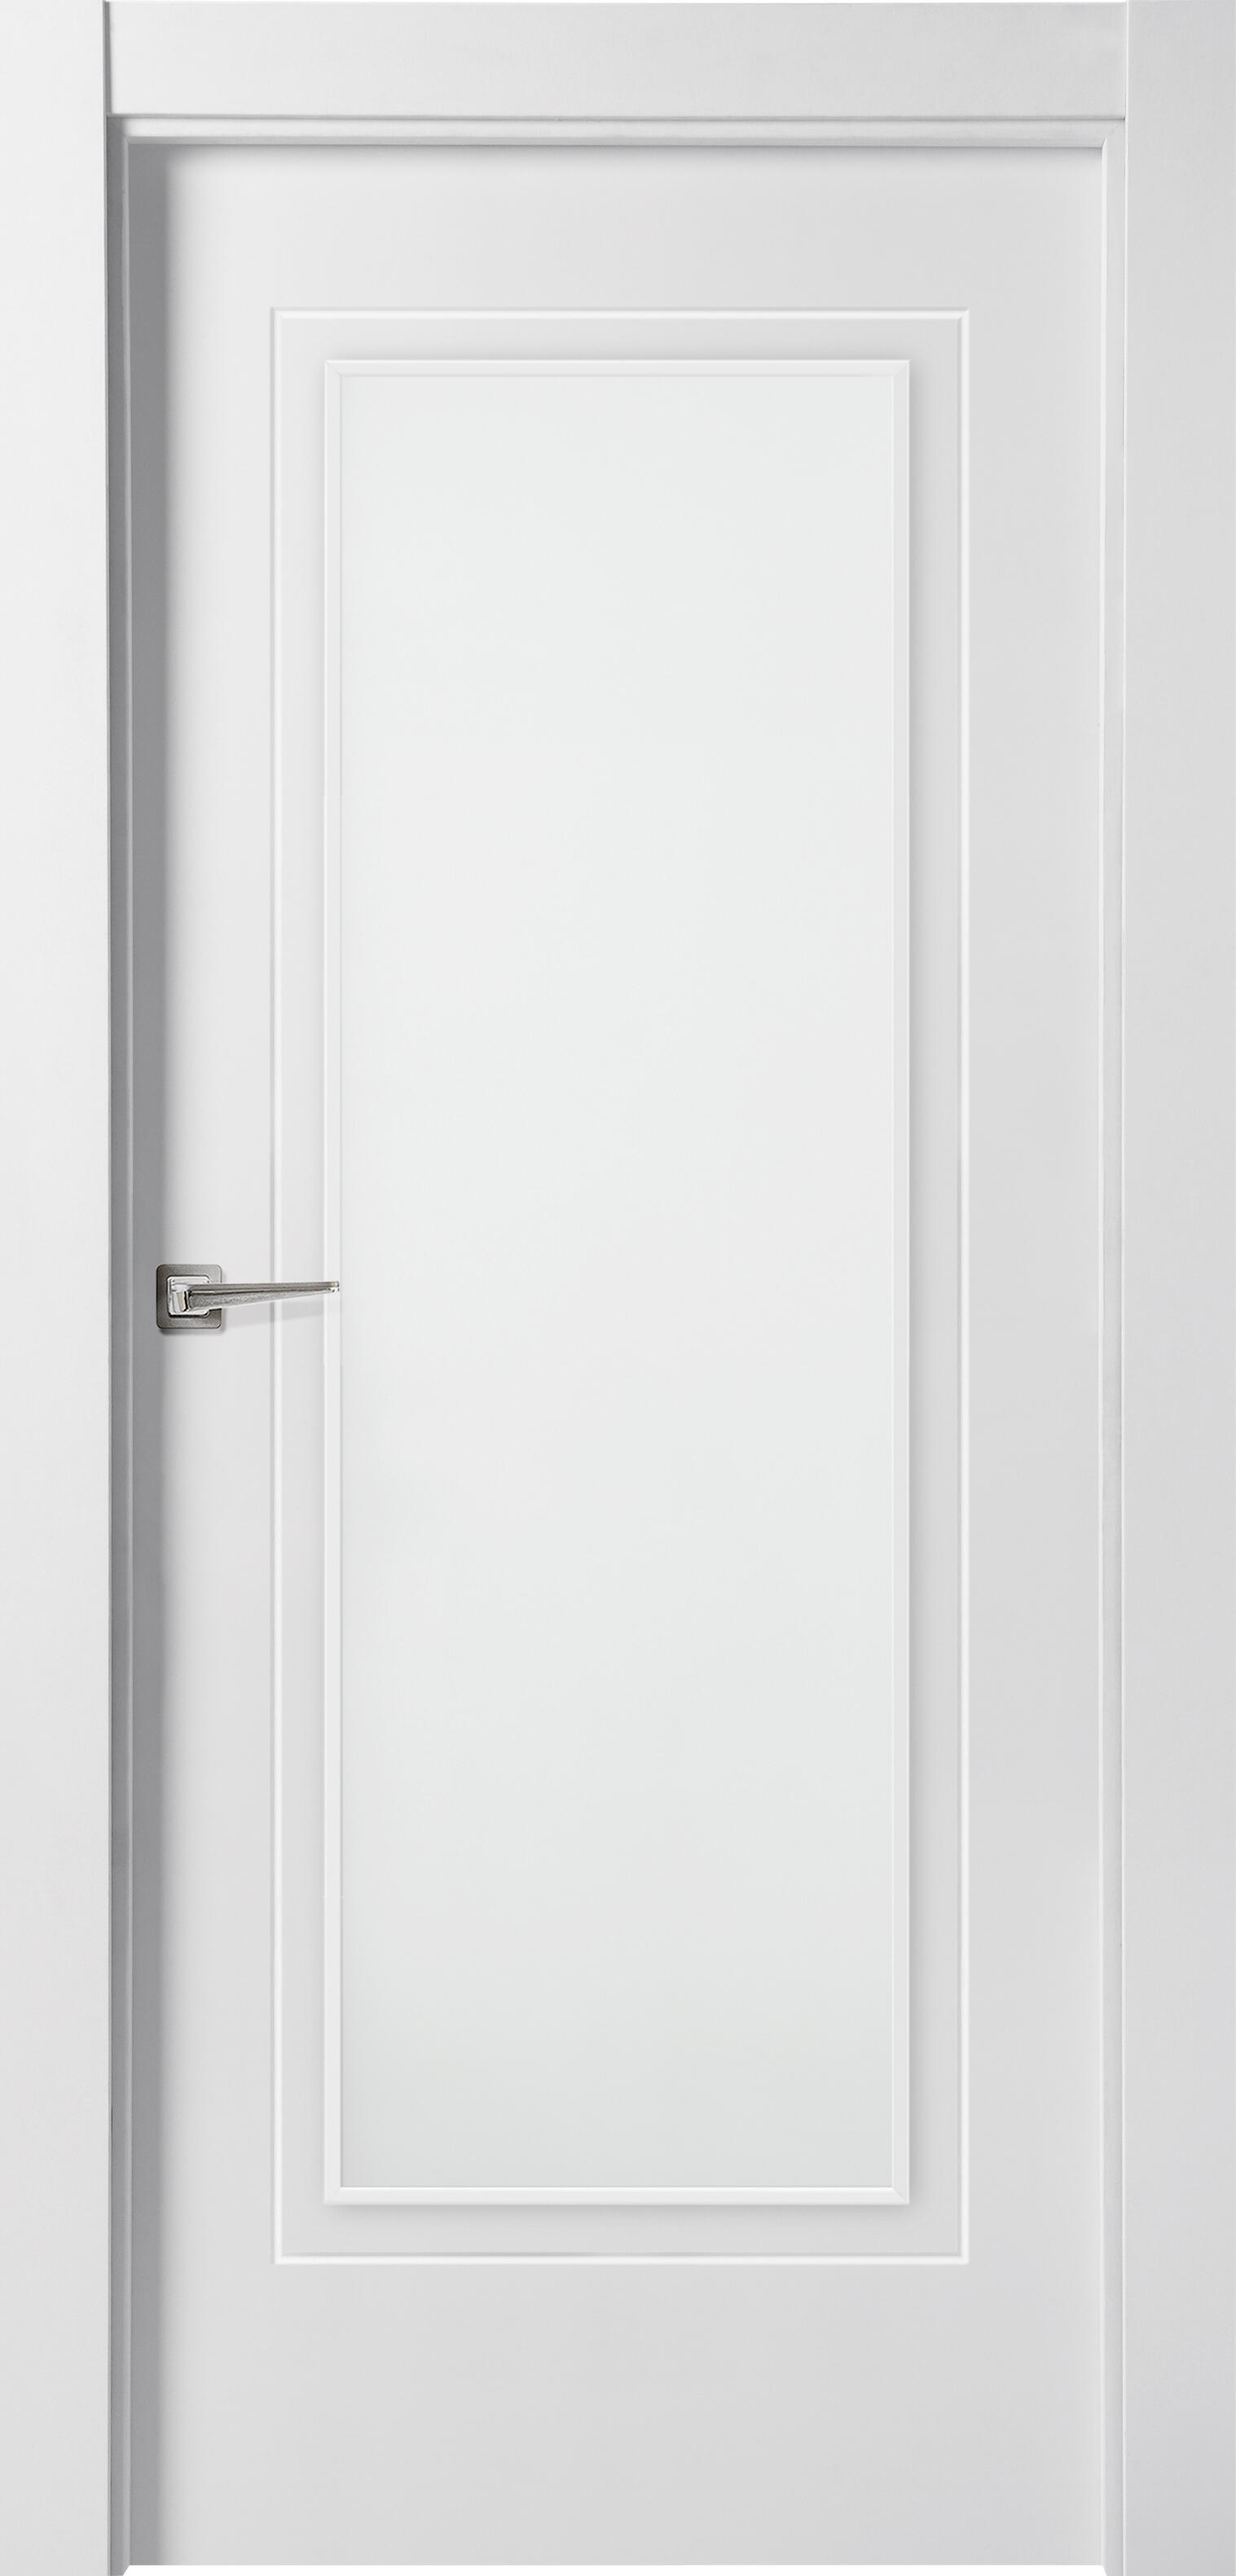 Puerta miramar blanco de apertura derecha con cristal 9x92.5 cm de la marca ARTENS